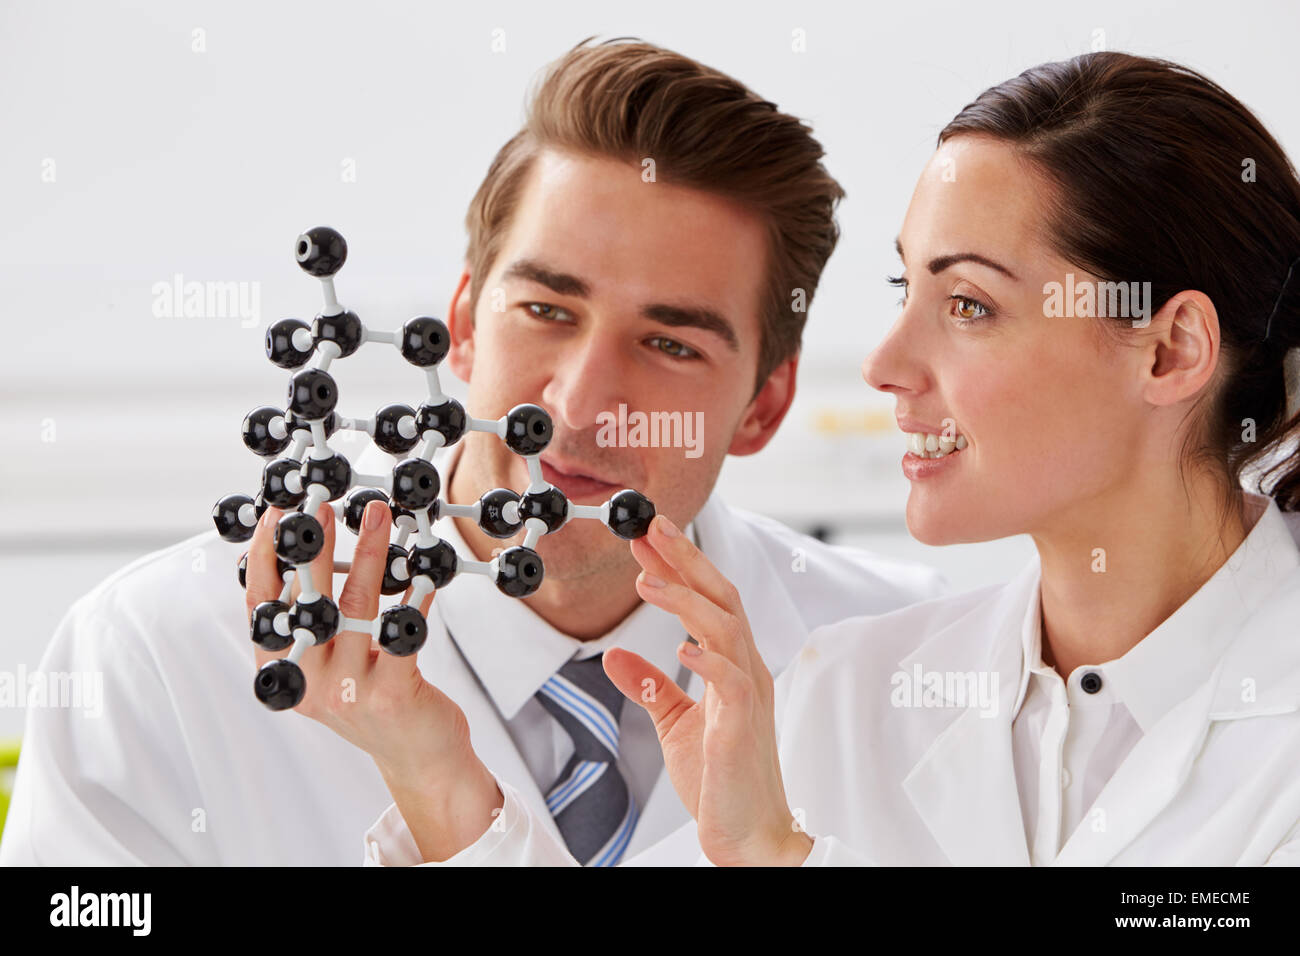 Zwei Techniker molekulare Modell im Labor betrachten Stockfoto